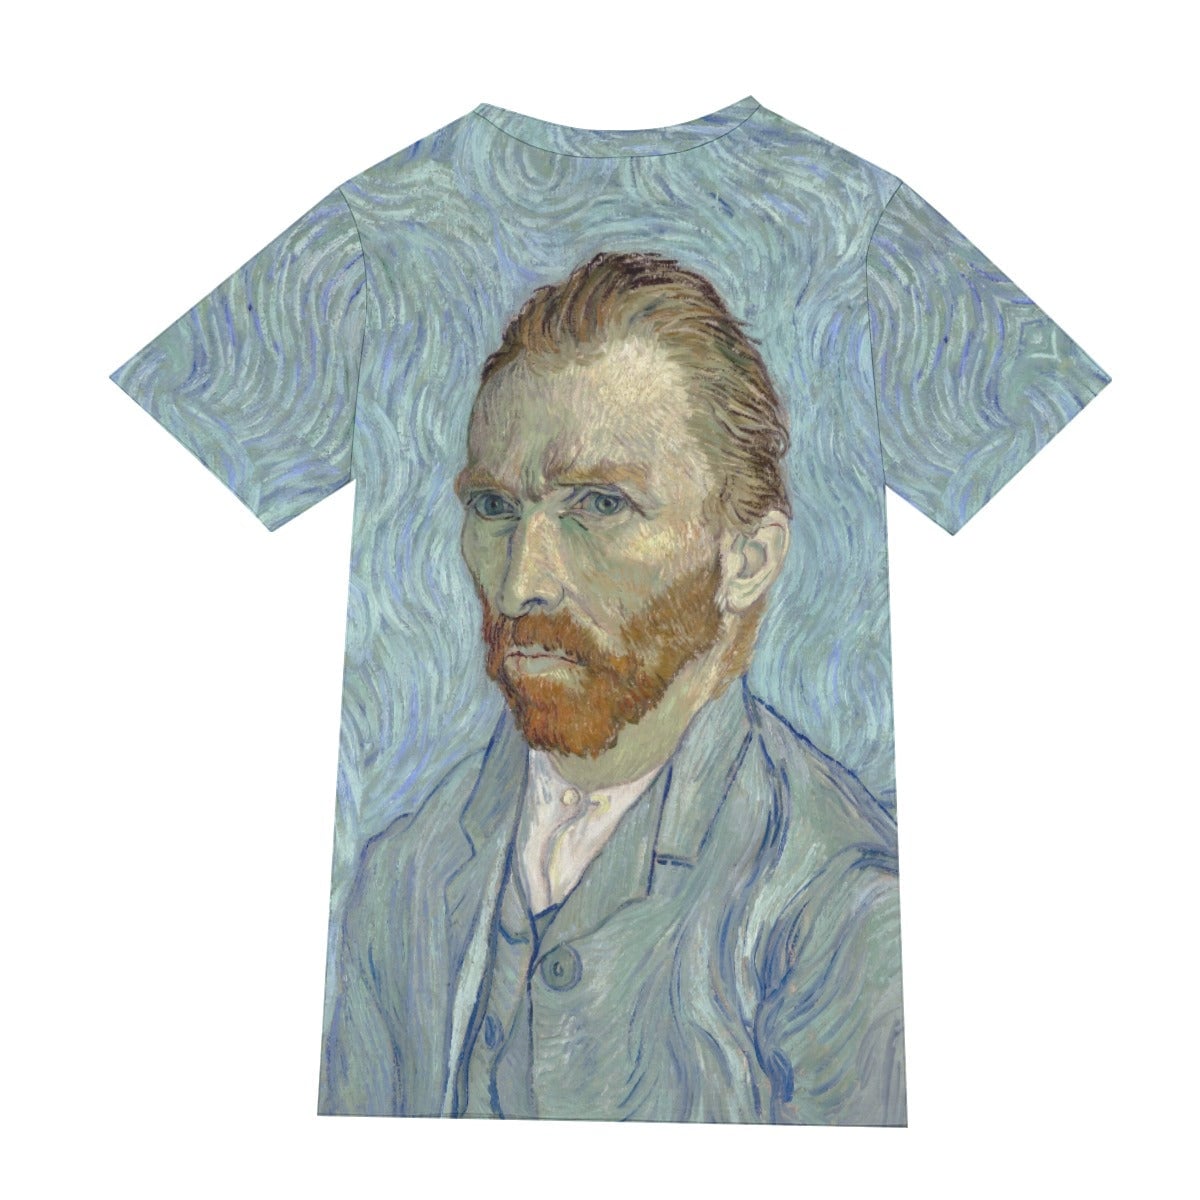 Vincent van Gogh’s Self-portrait T-Shirt